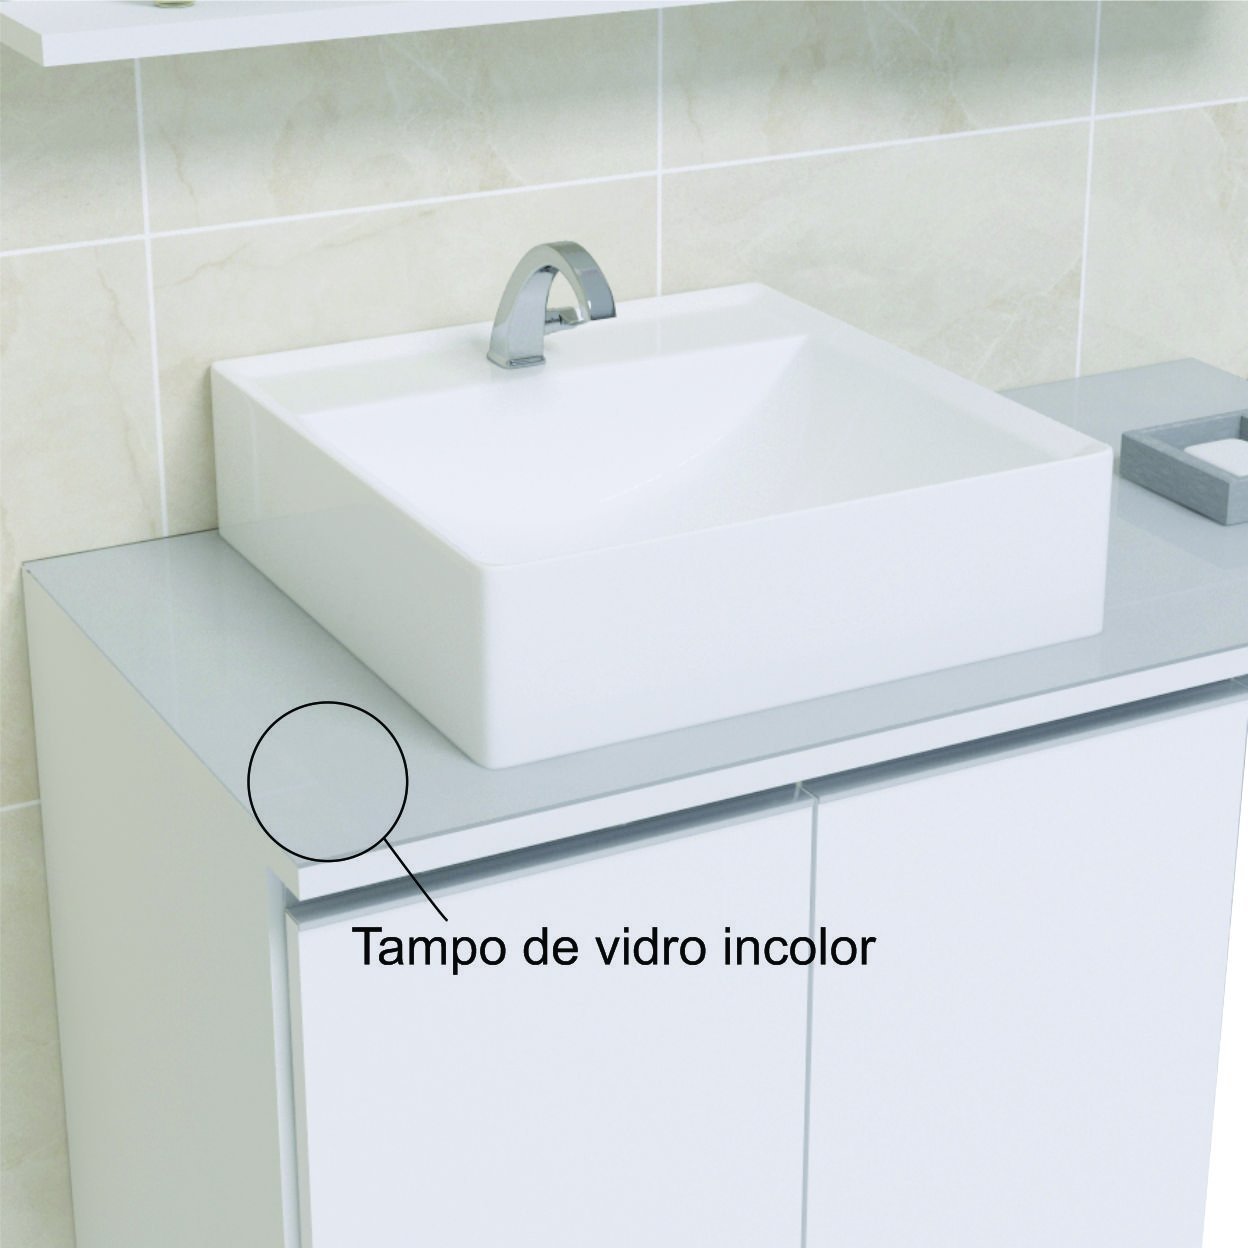 Conjunto Gabinete Banheiro Completo Prisma 60cm - Branco / Preto COM TAMPO VIDRO - 2